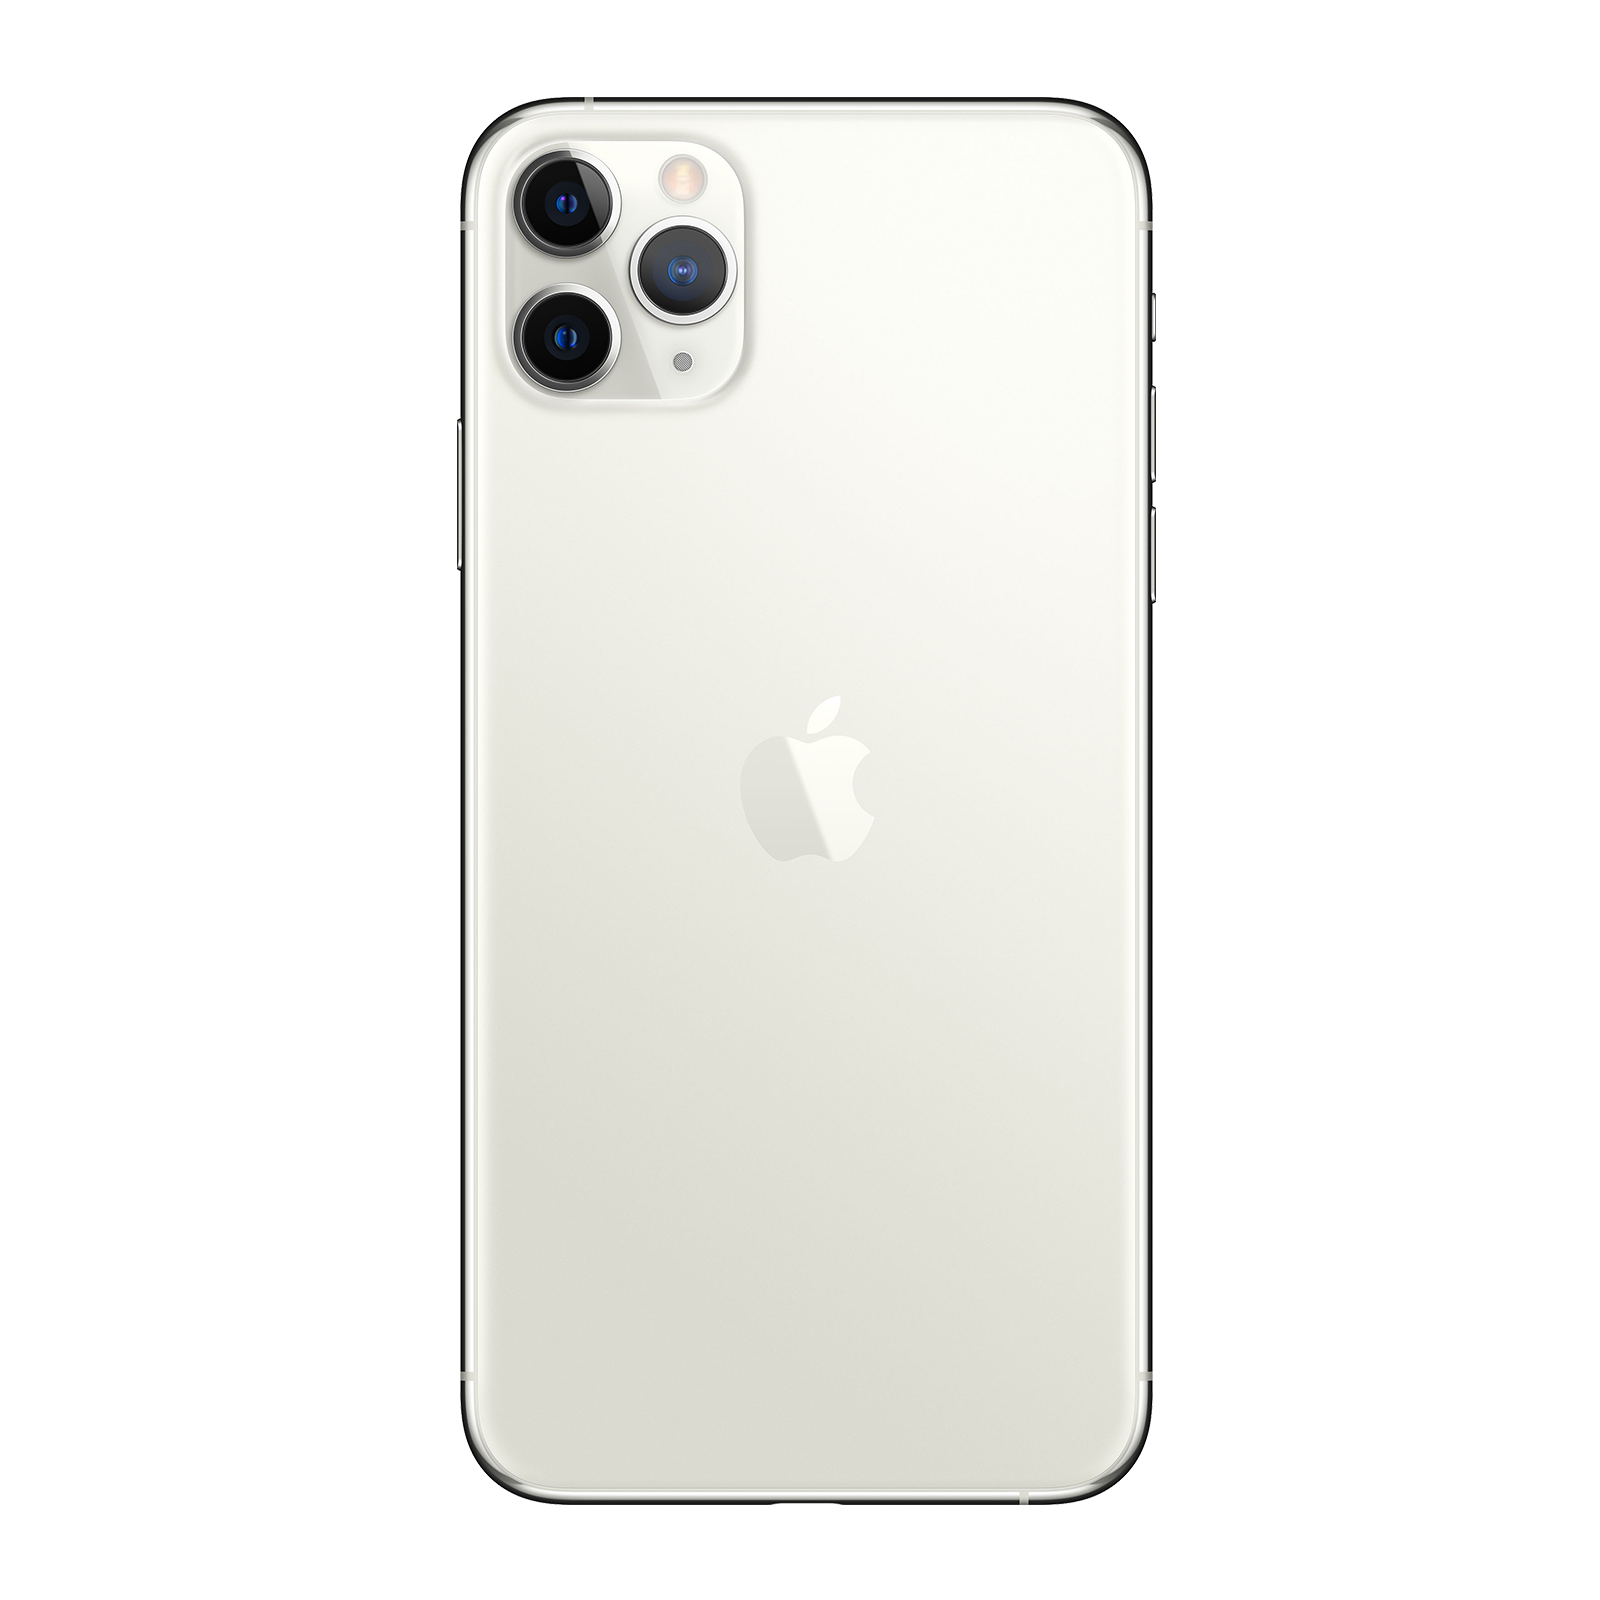 Apple iPhone 11 Pro Max 512GB Silver Pristine - T-Mobile